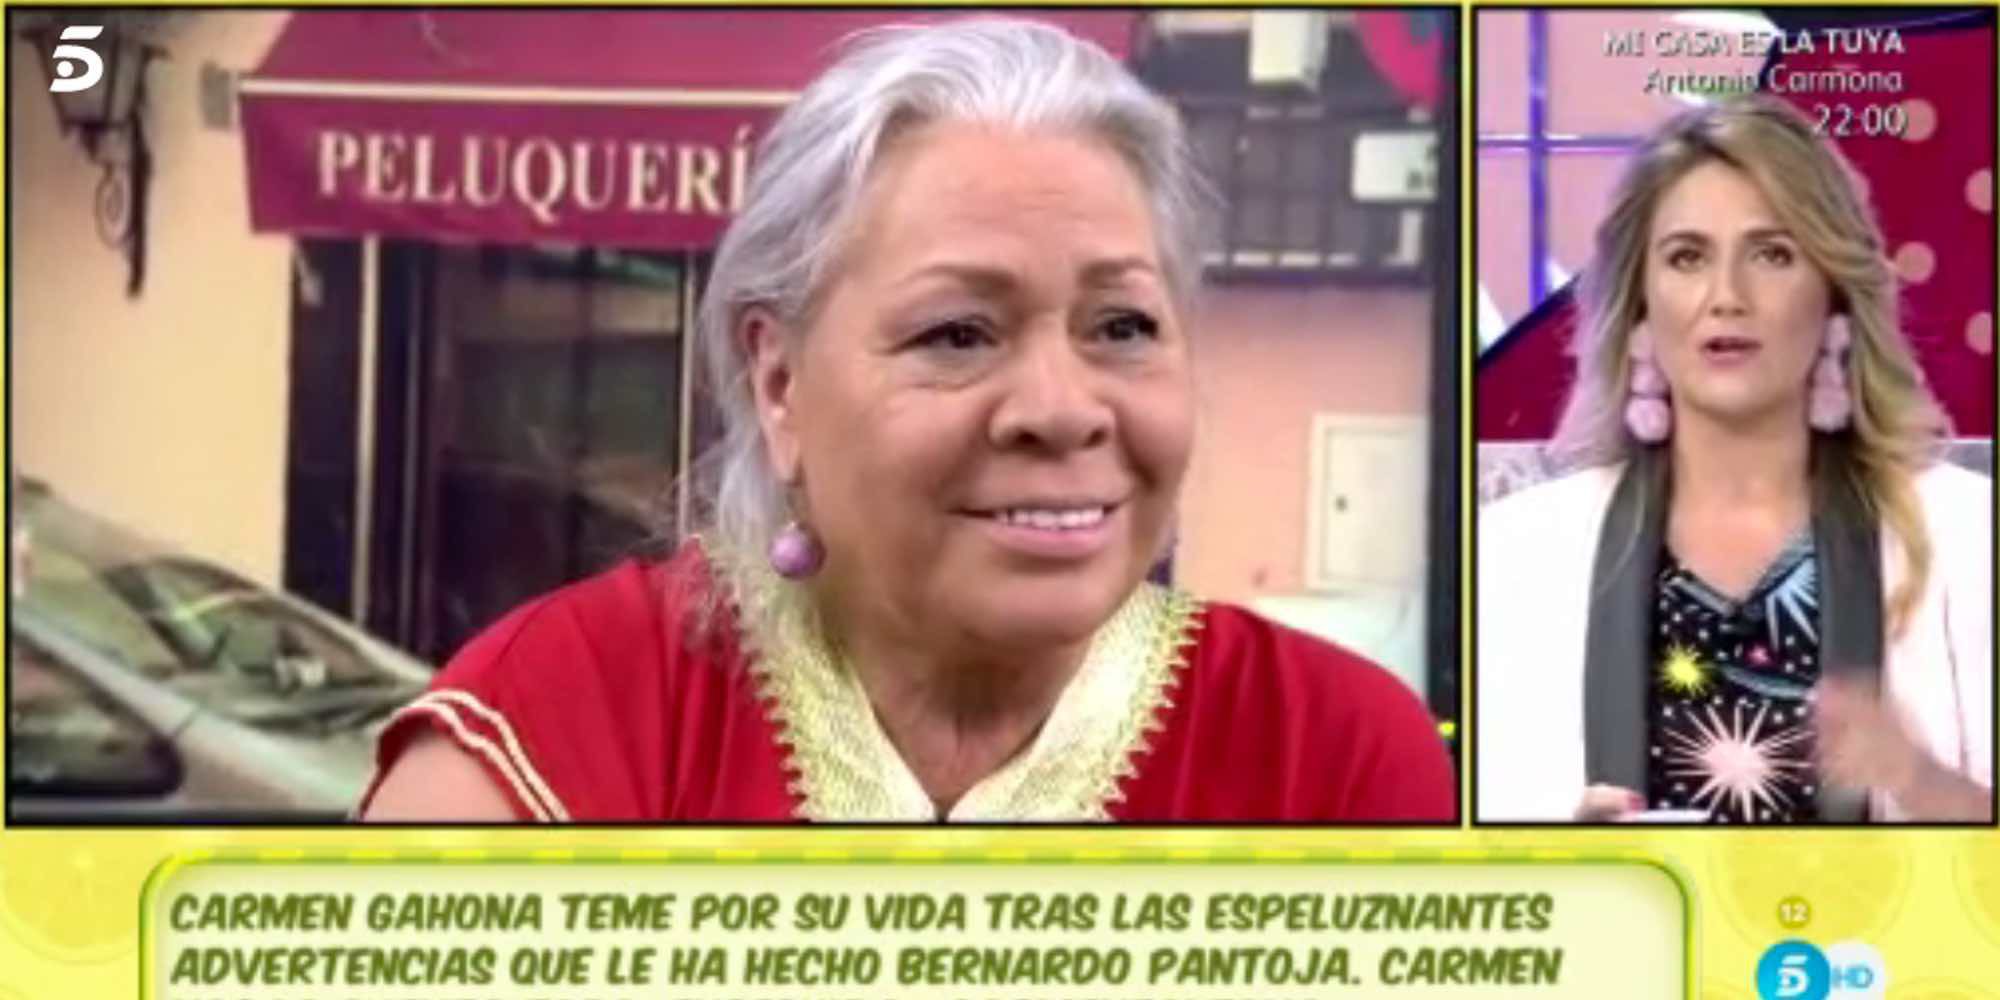 Carmen Gahona arremete contra Carlota Corredera: "No eres nadie para llamarme la atención ni darme lecciones"